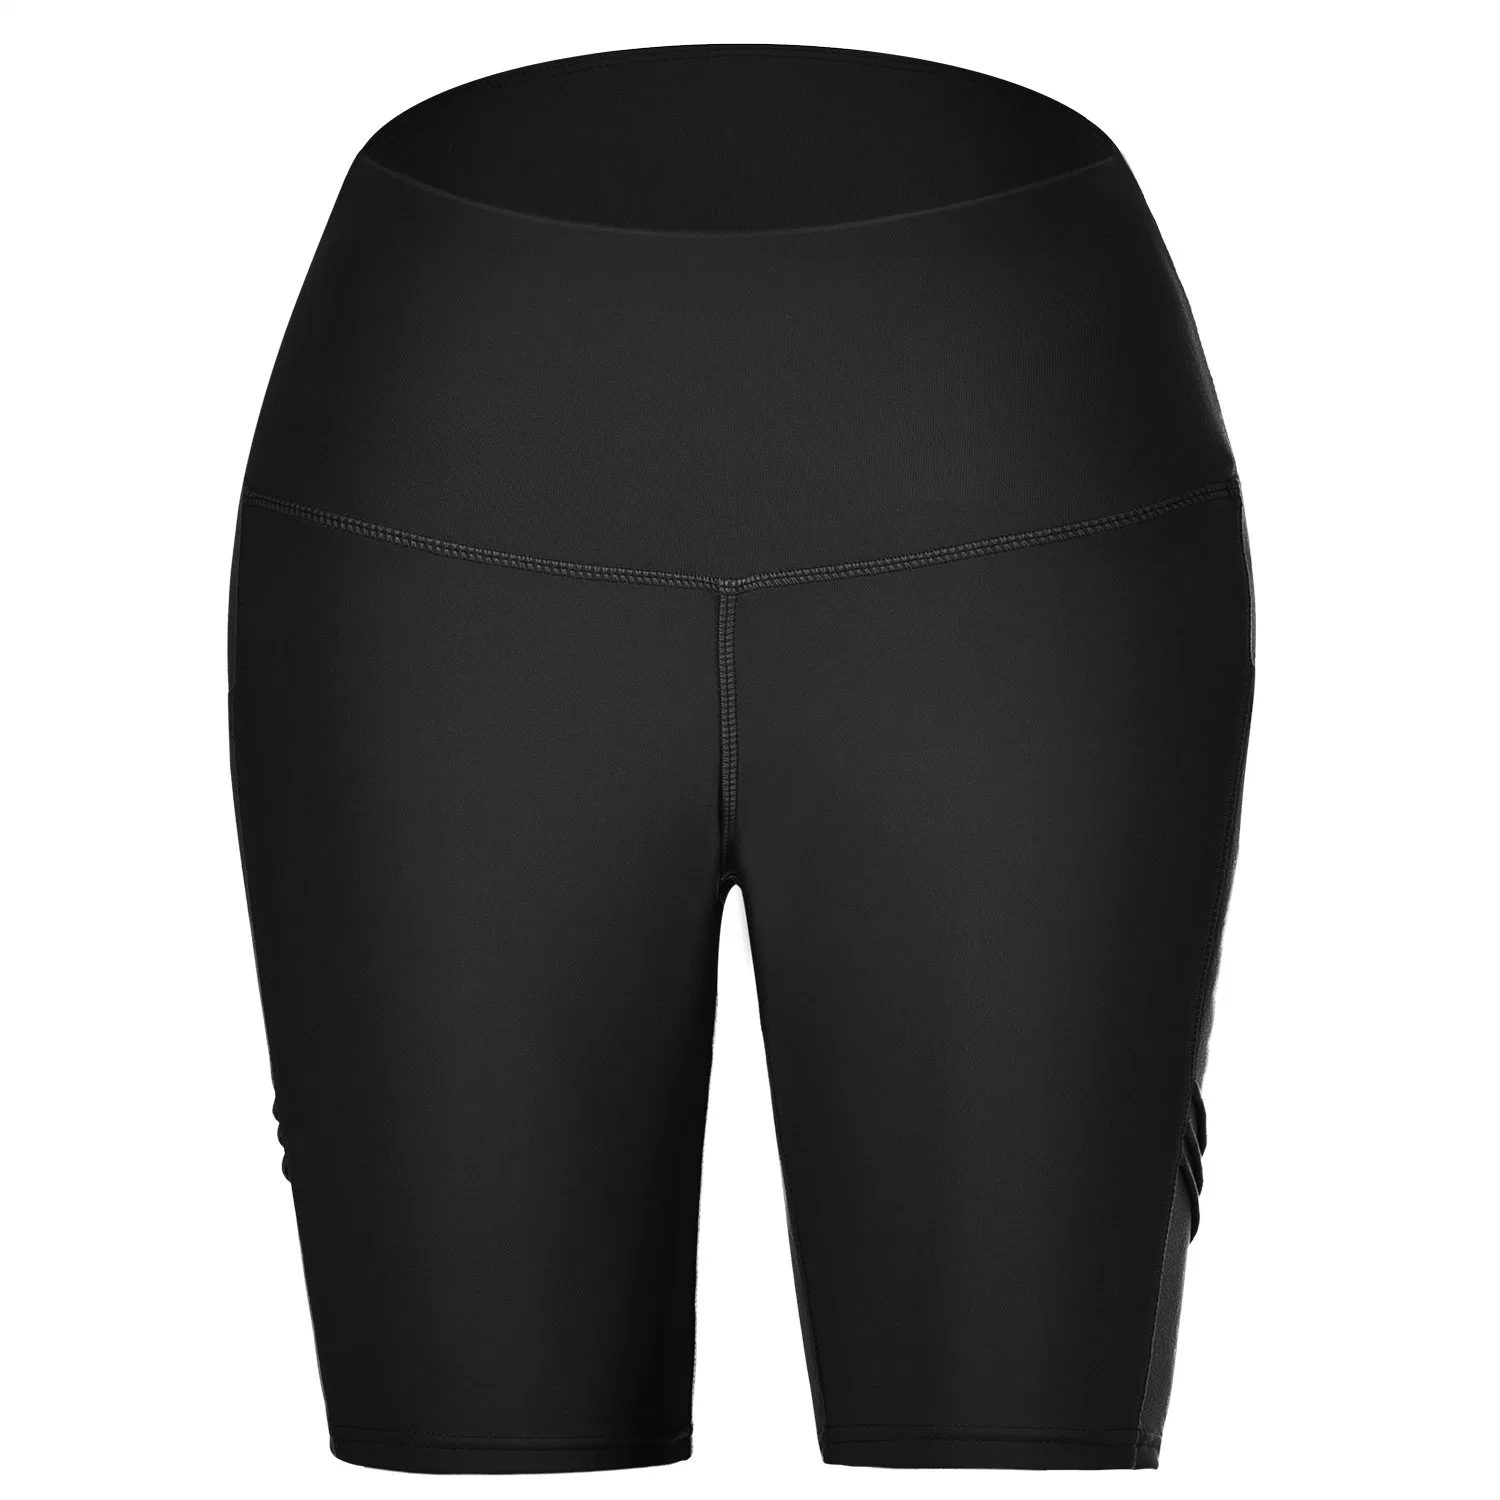 Taille haute Yoga Shorts poches latérales Fitness Entraînement athlétique de l'exécution Bike Shorts